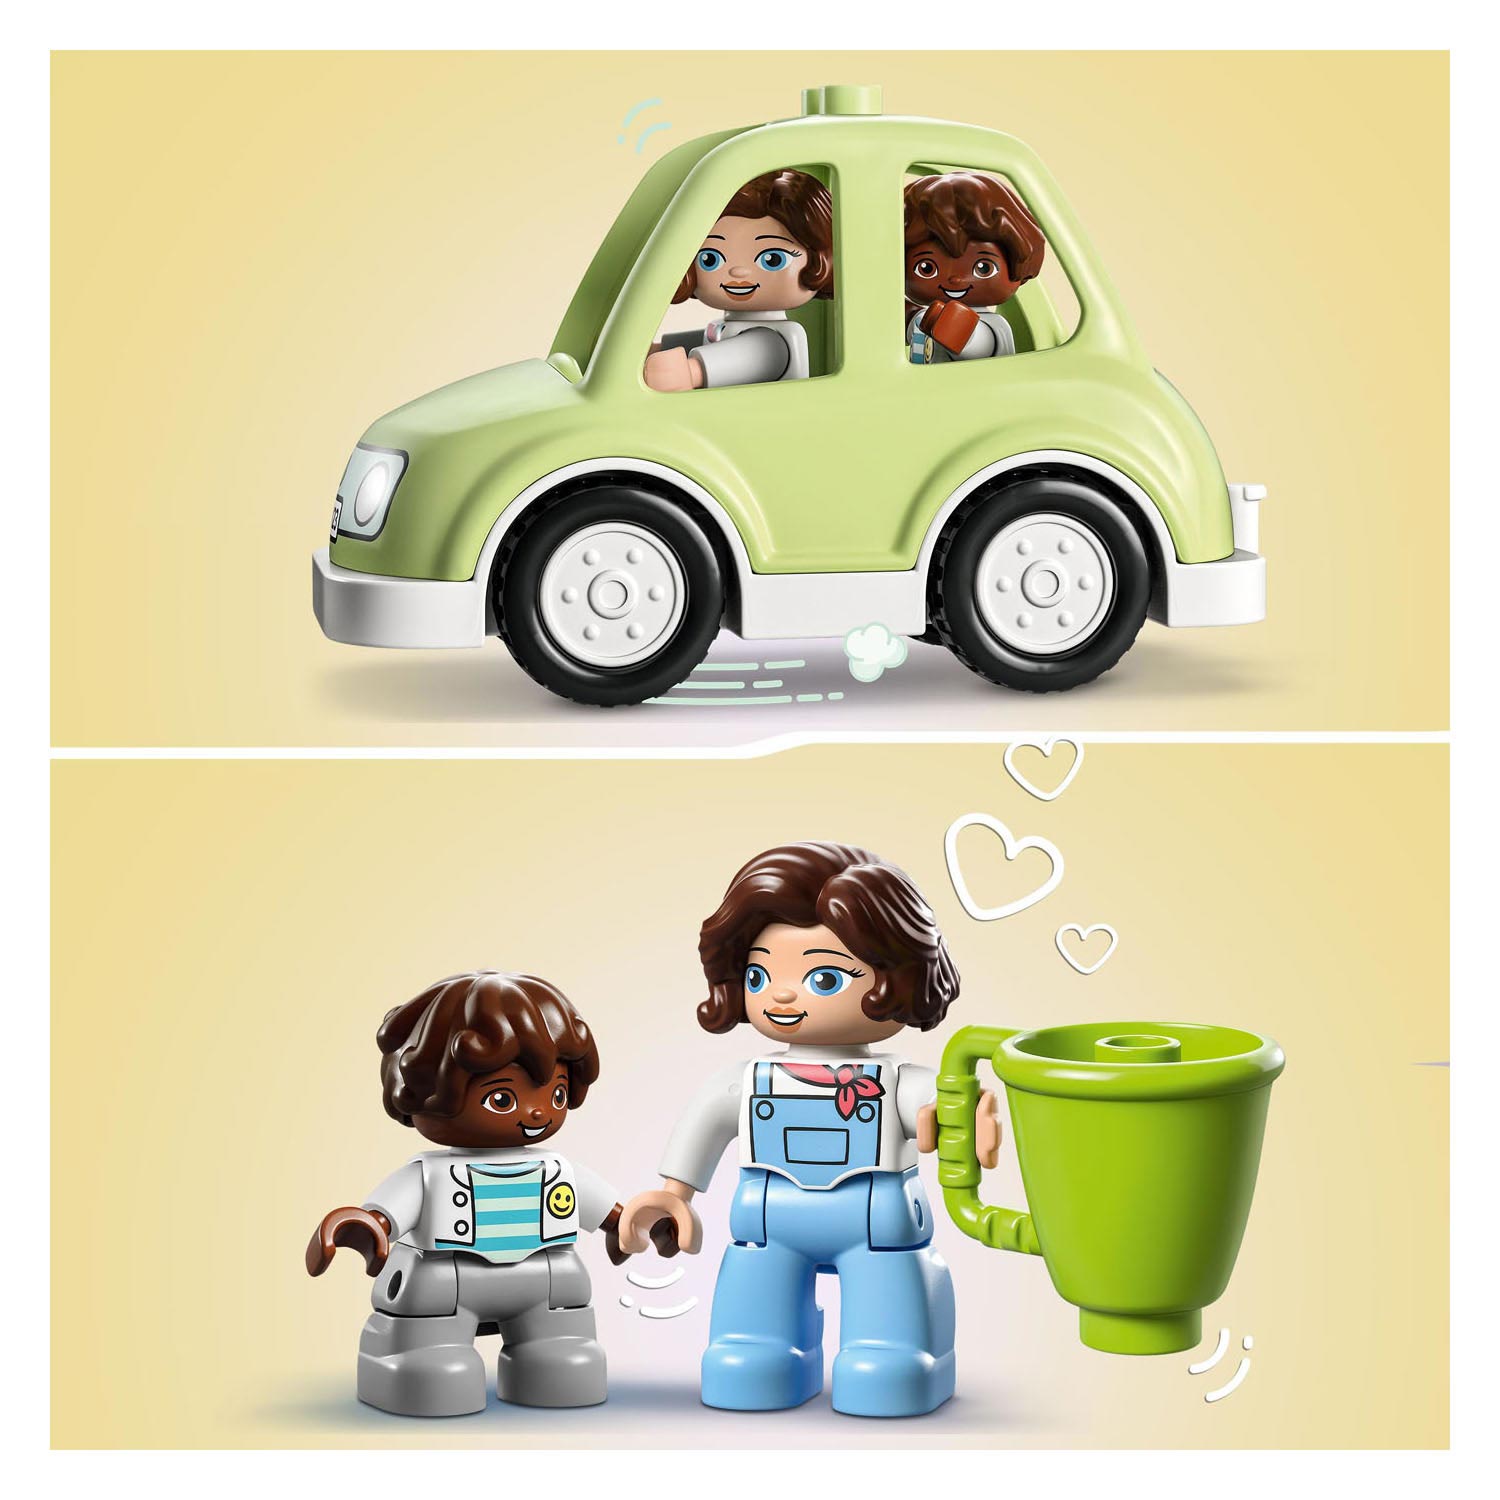 LEGO Duplo 10986 Familienhaus auf Rädern